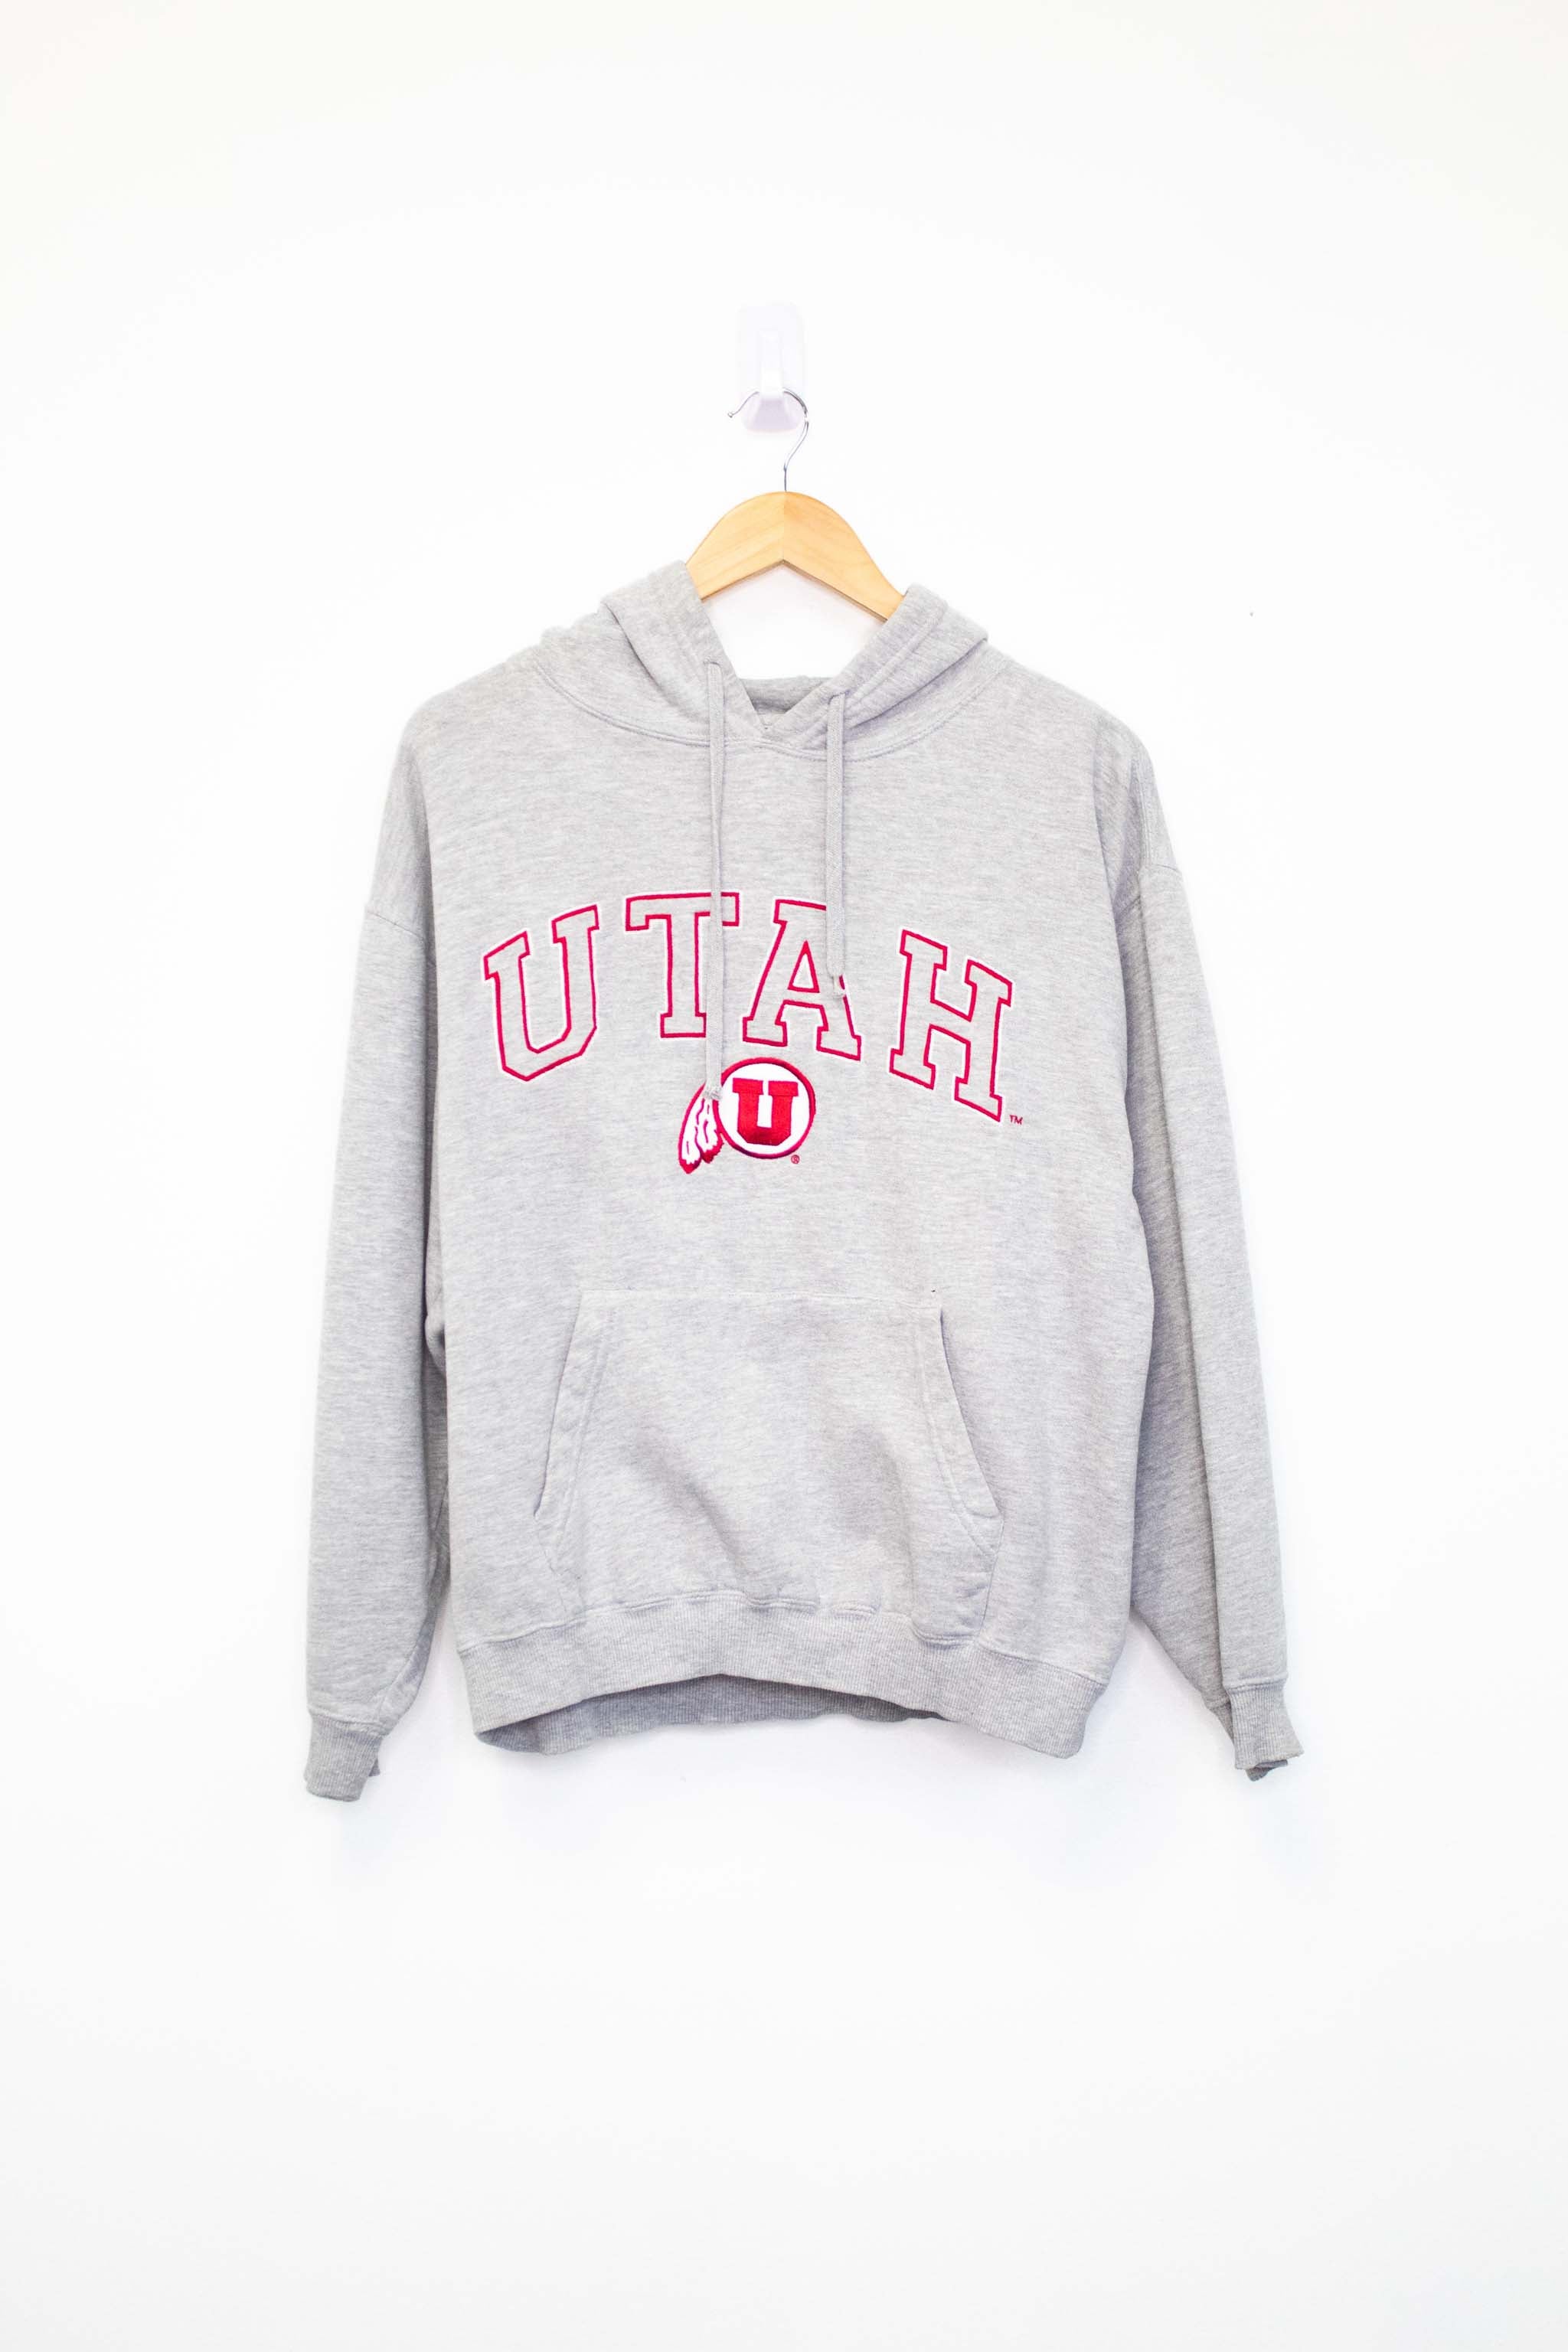 Vintage Utah Utes Hoodie